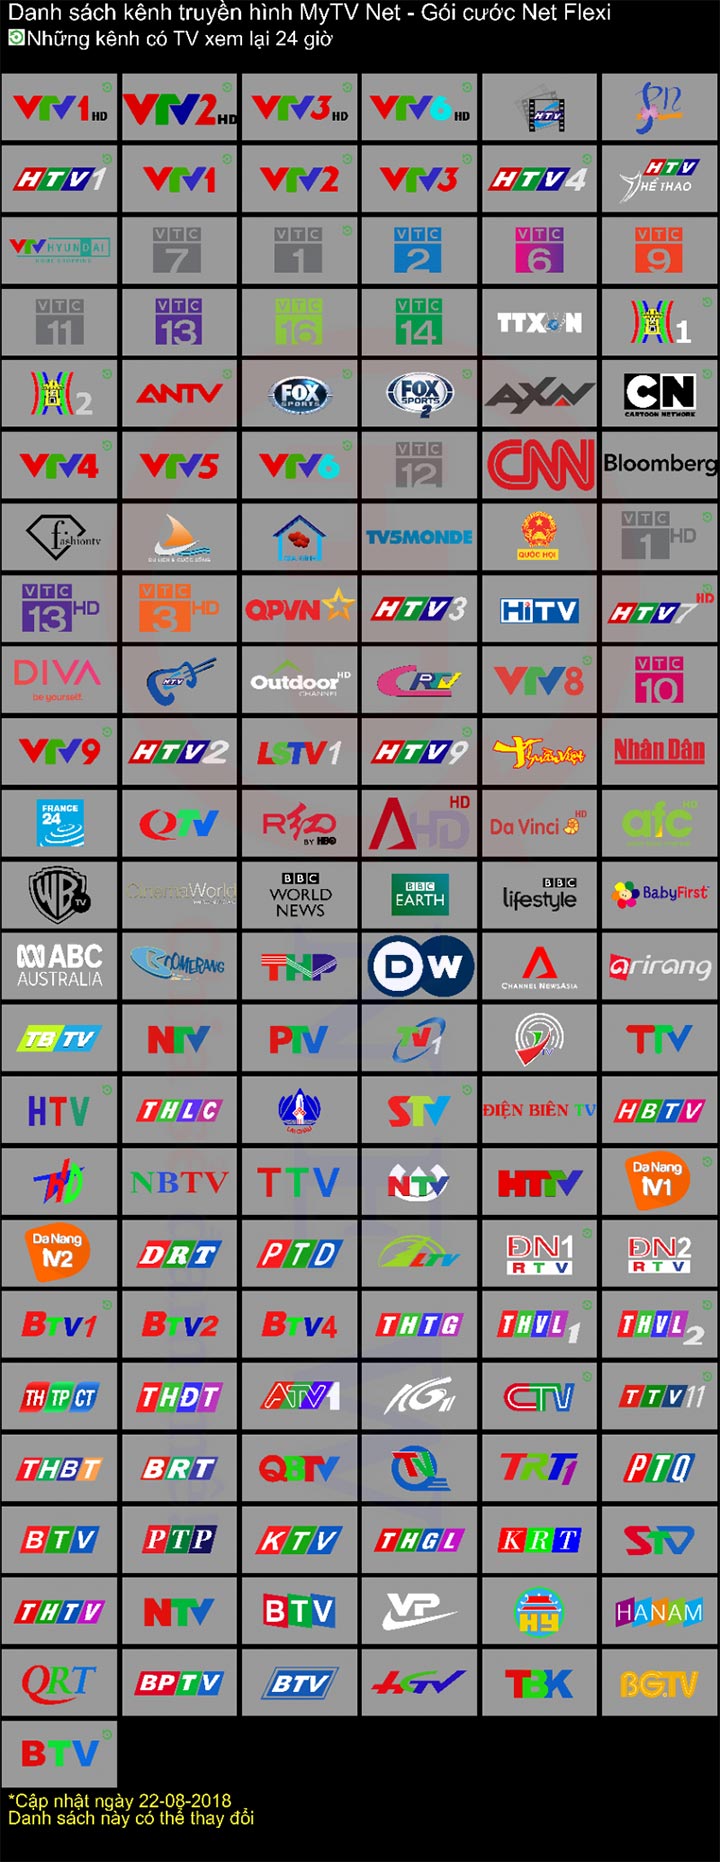 Box MyTVNet Net 1 - Android TV Box full bản quyền 180 kênh TV | HDnew - Chia sẻ đam mê